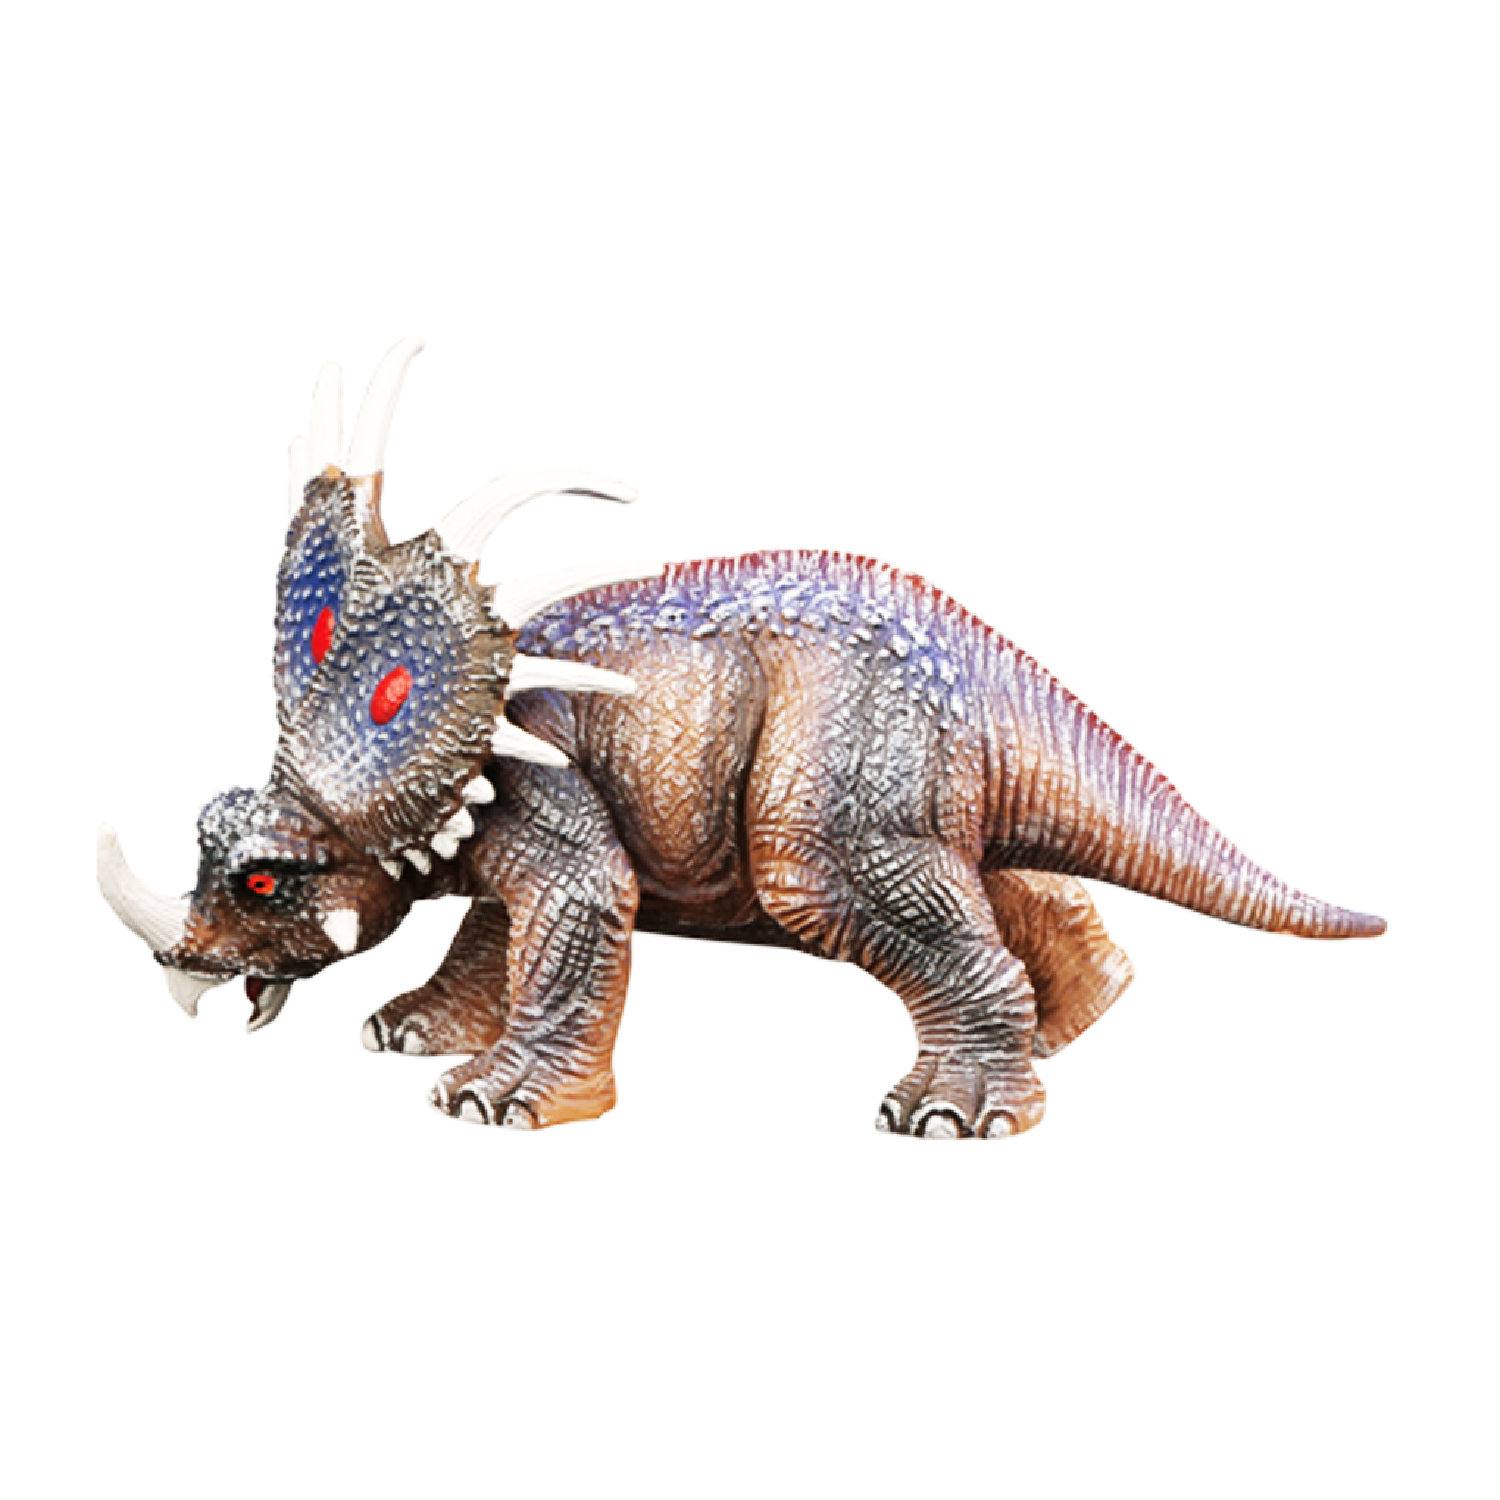 фото Игрушка динозавр серии мир динозавров стиракозавр mm216-387 masai mara